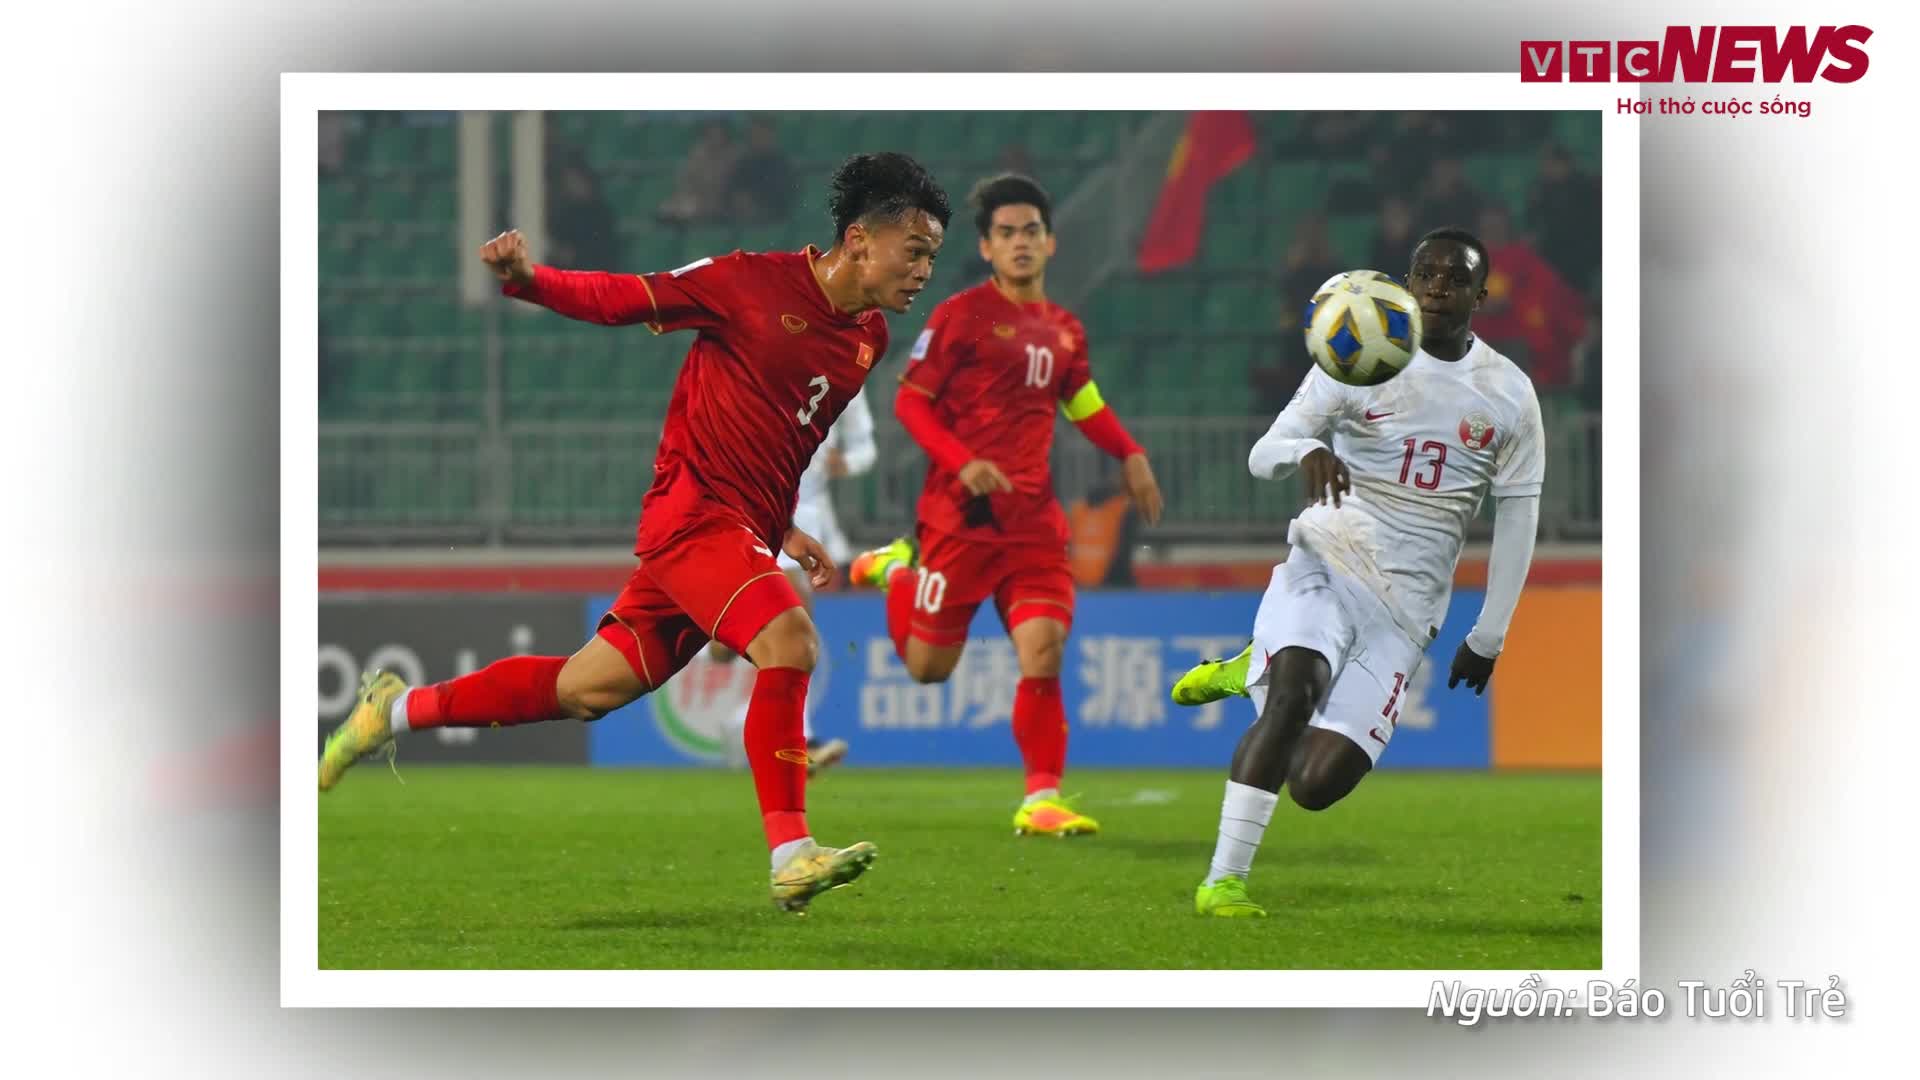 Thắng 2 trận, U20 Việt Nam có thể đi tiếp hay bị loại trong trường hợp nào?